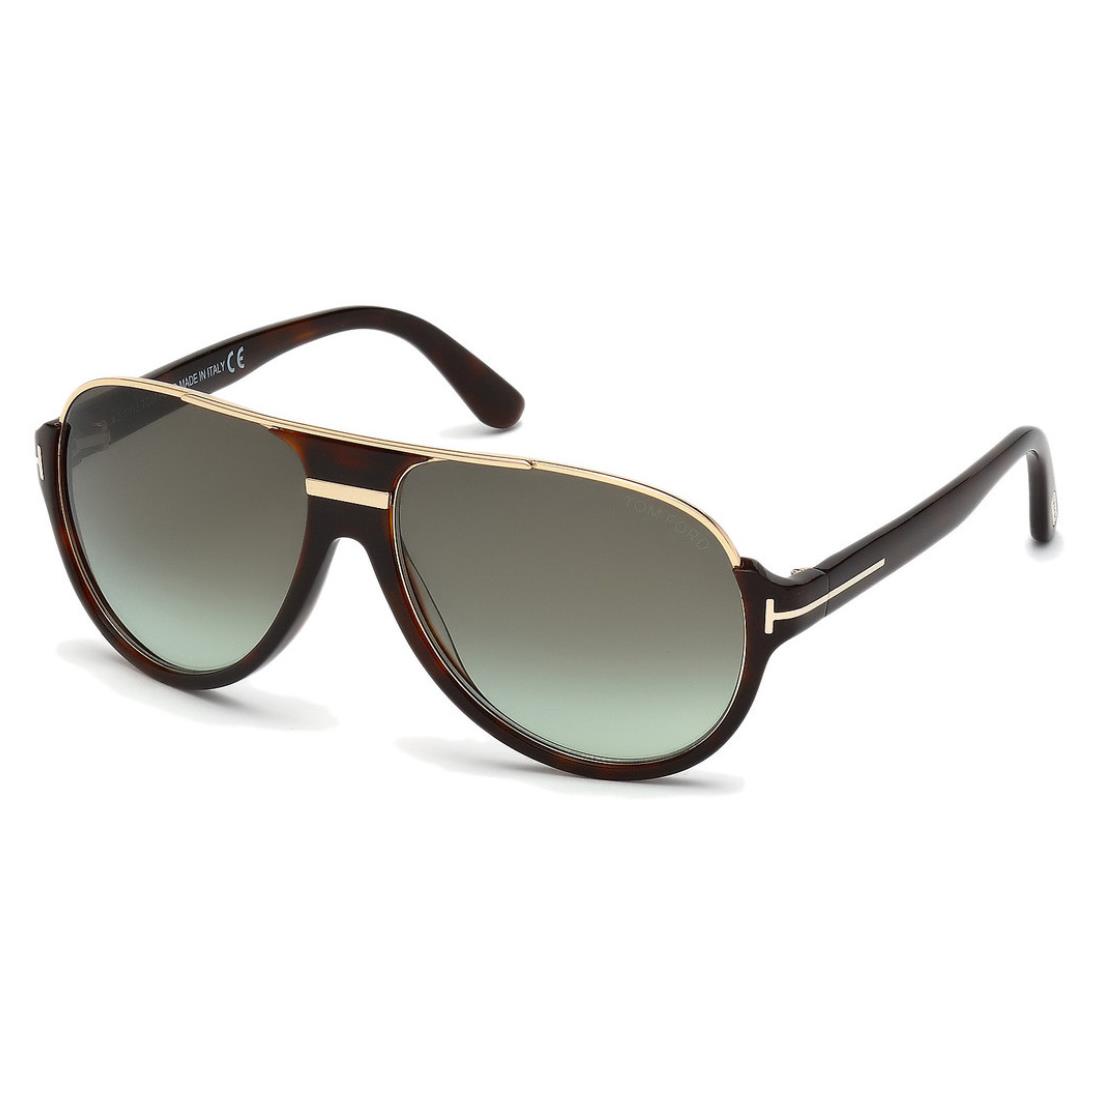 Tom Ford FT 0334 Dimitry 56K Havana/green Gradient Sunglasses